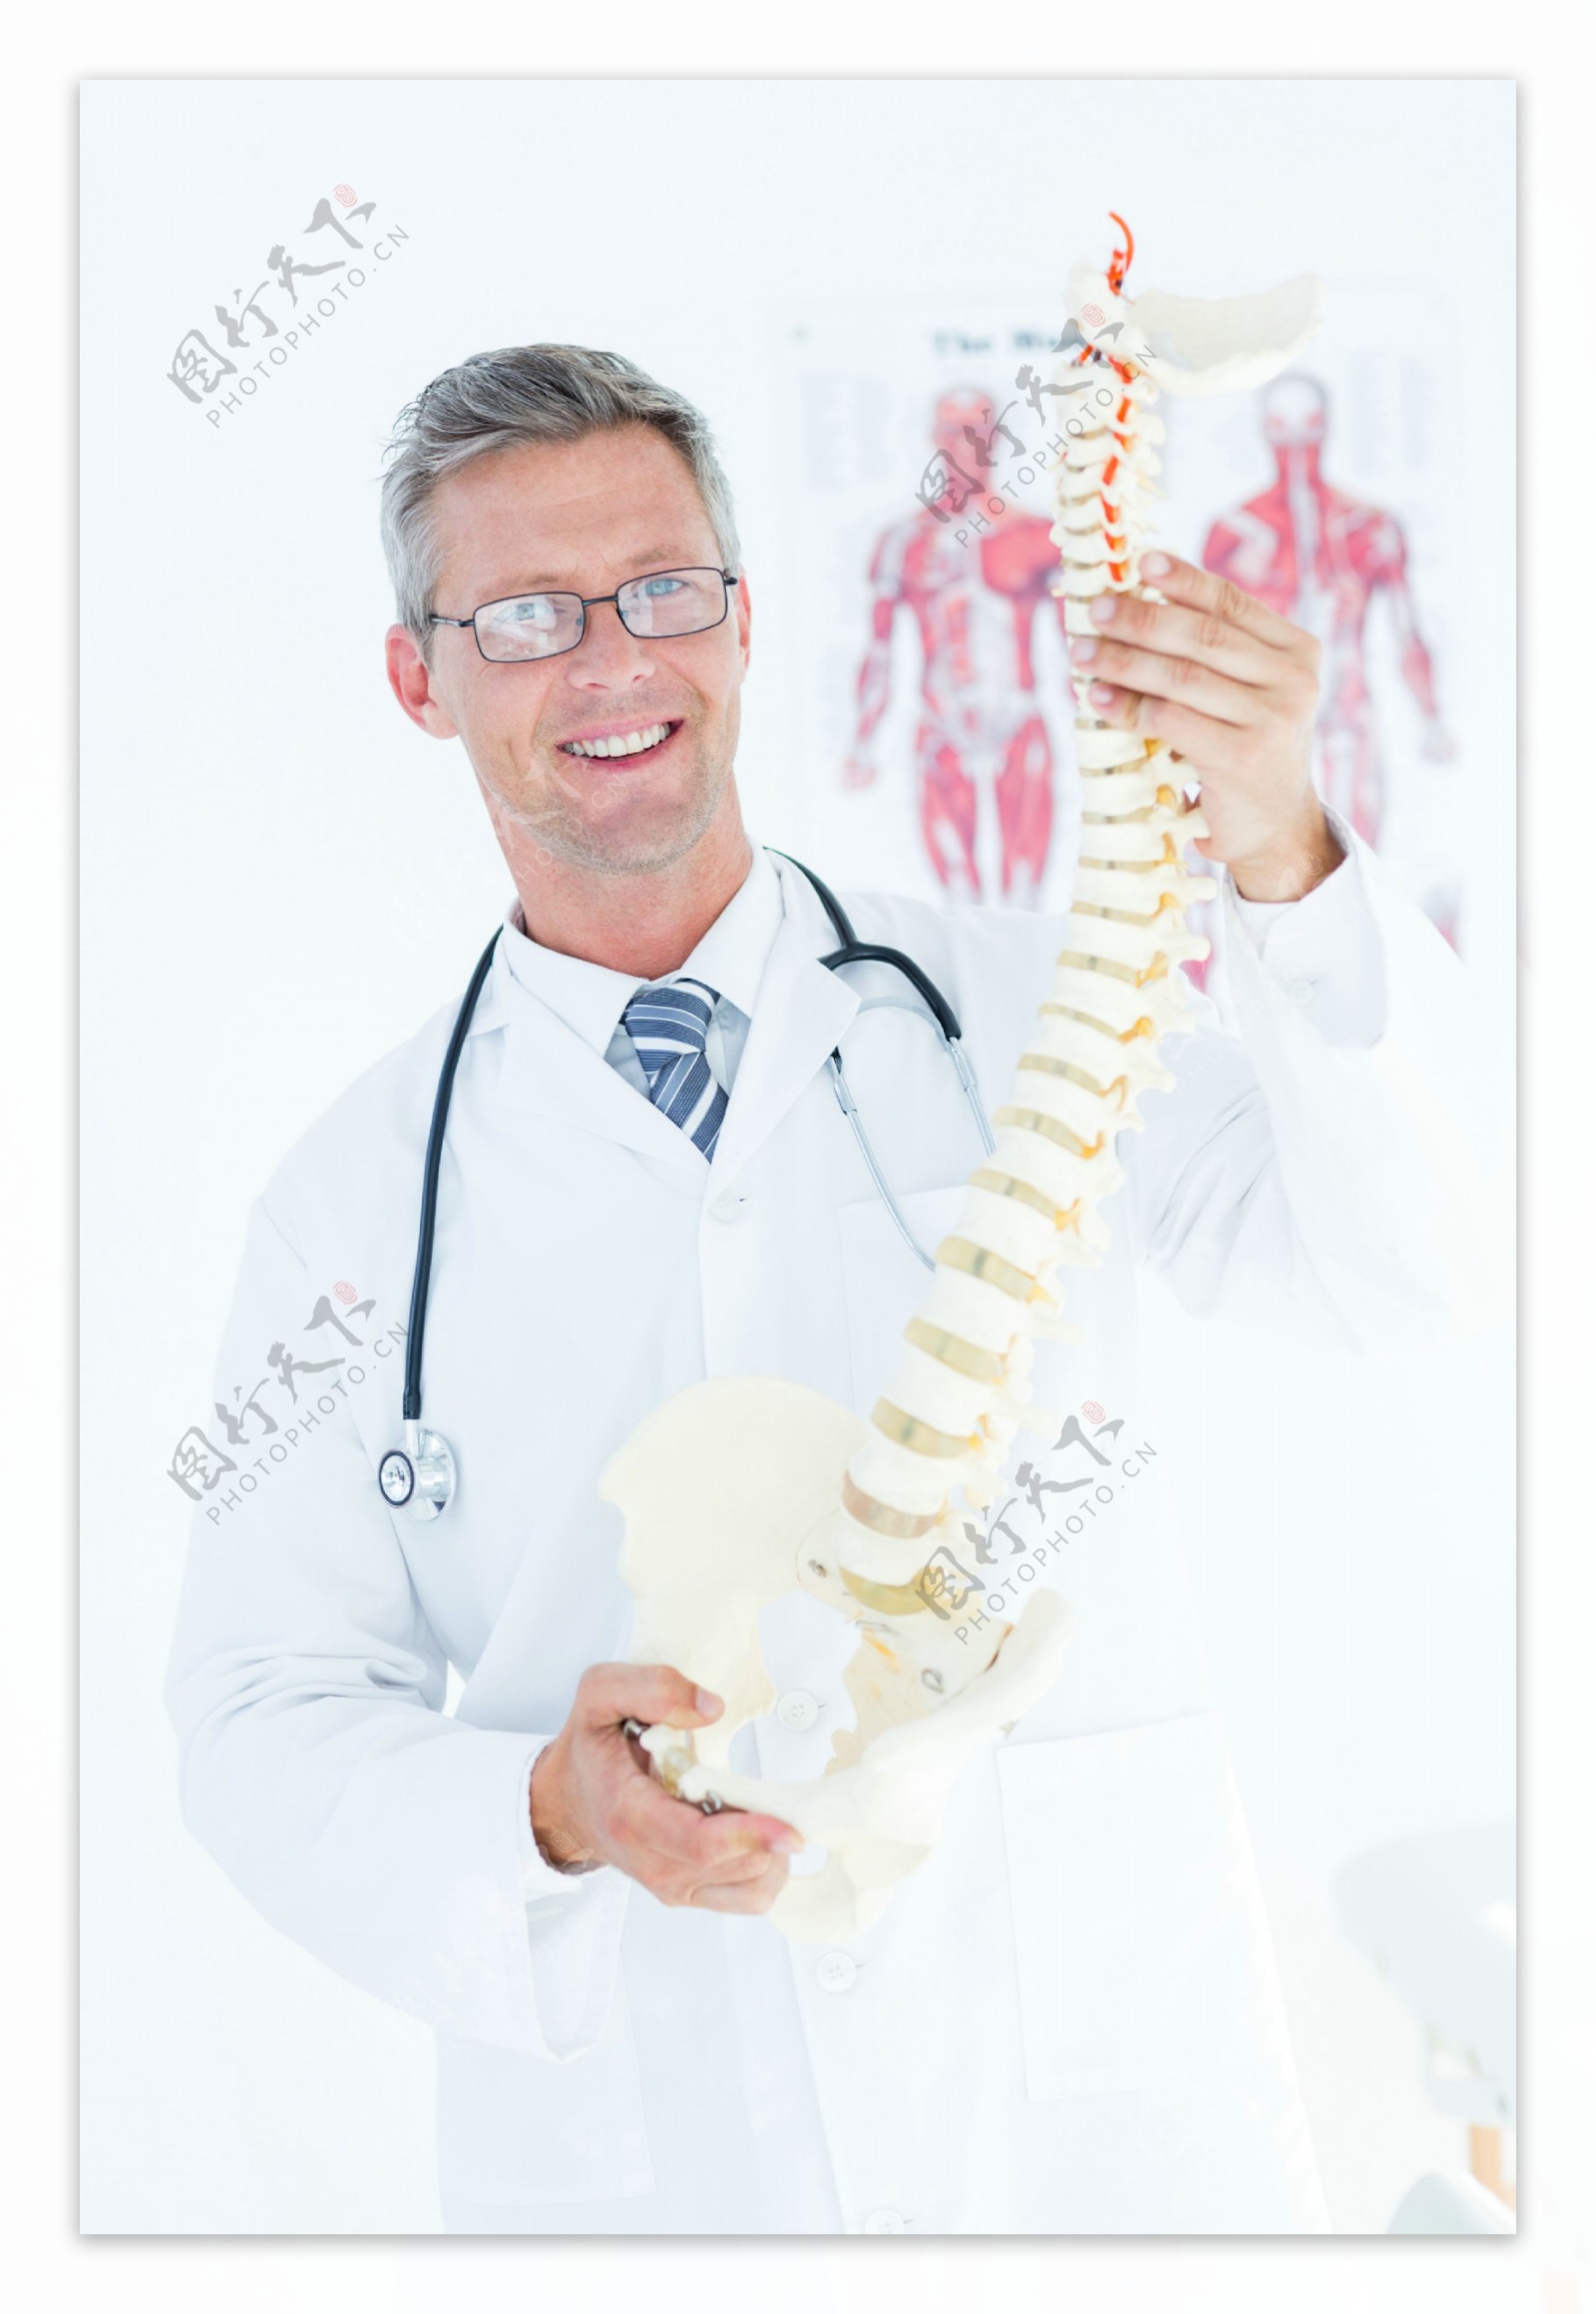 拿着人体脊椎模型的医生图片